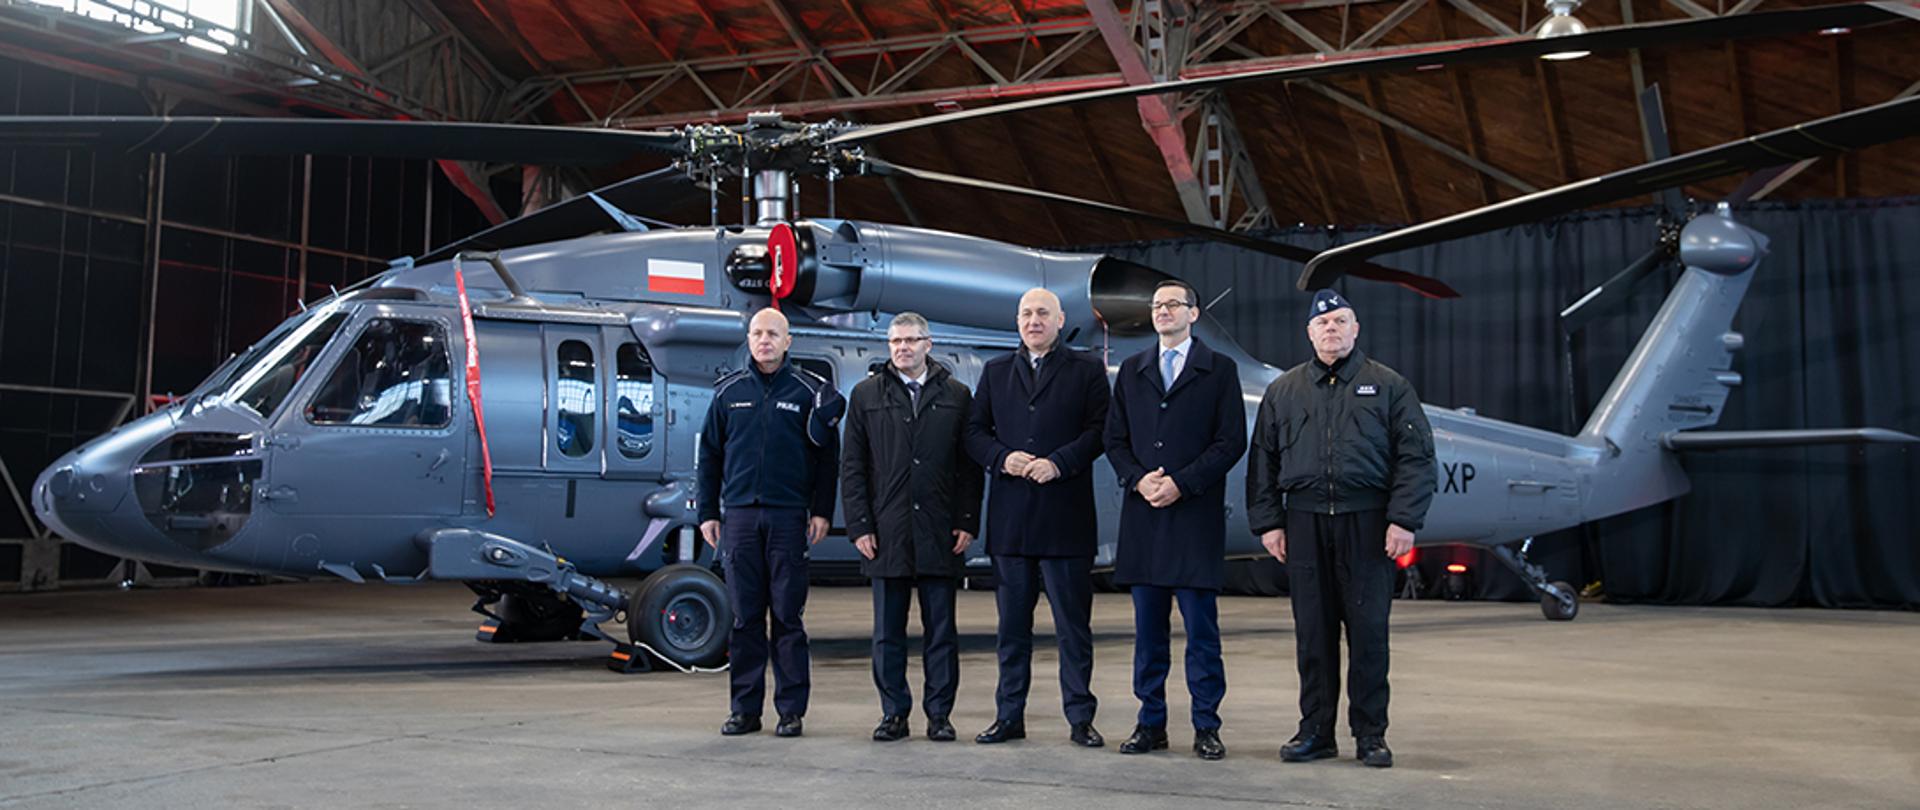 Przekazanie helikopterów S-70i Black Hawk polskiej Policji.